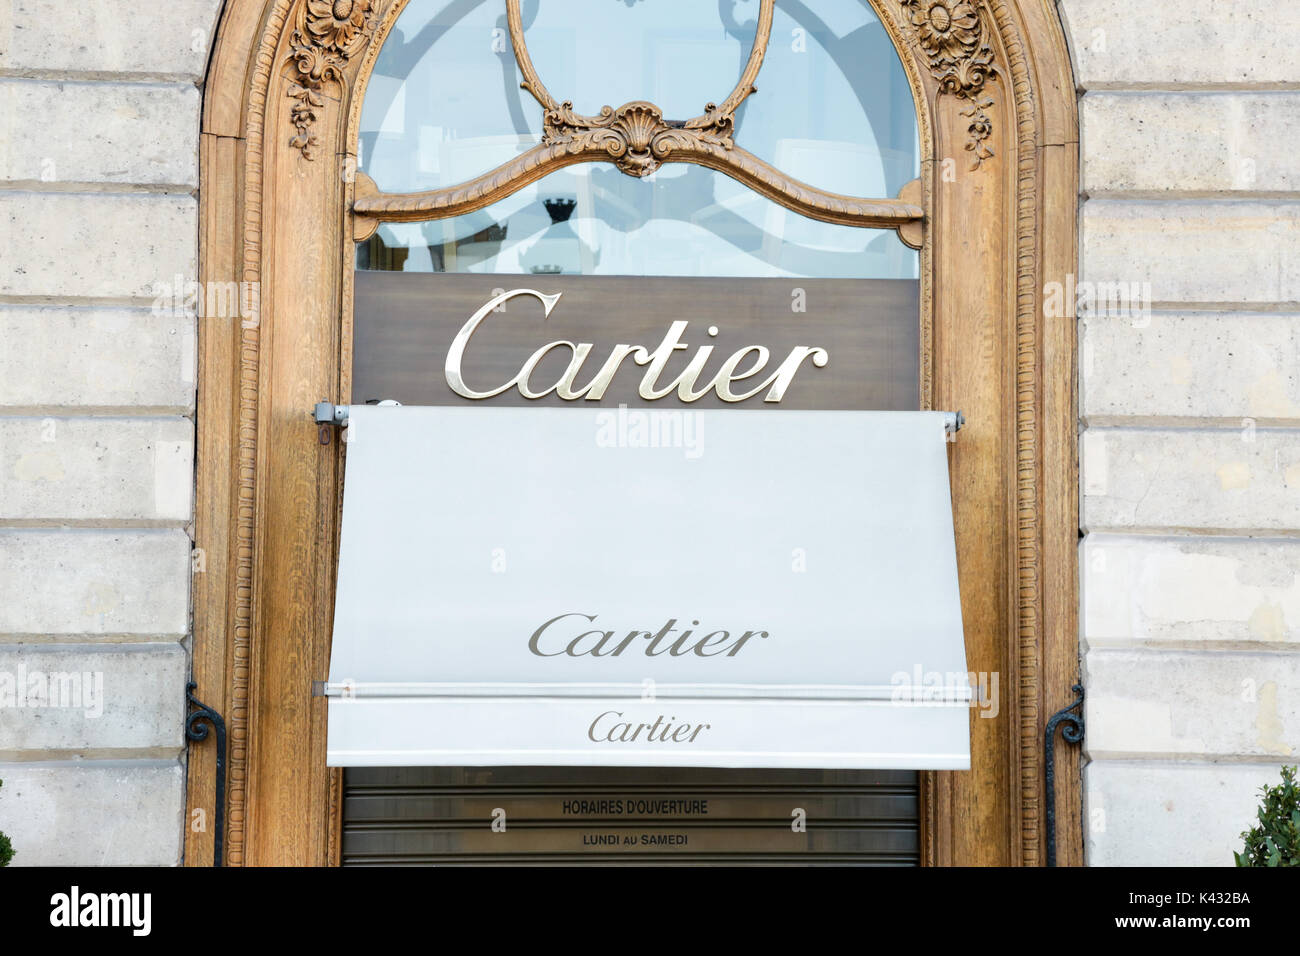 Cartier Place Vendome Banque d'image et 